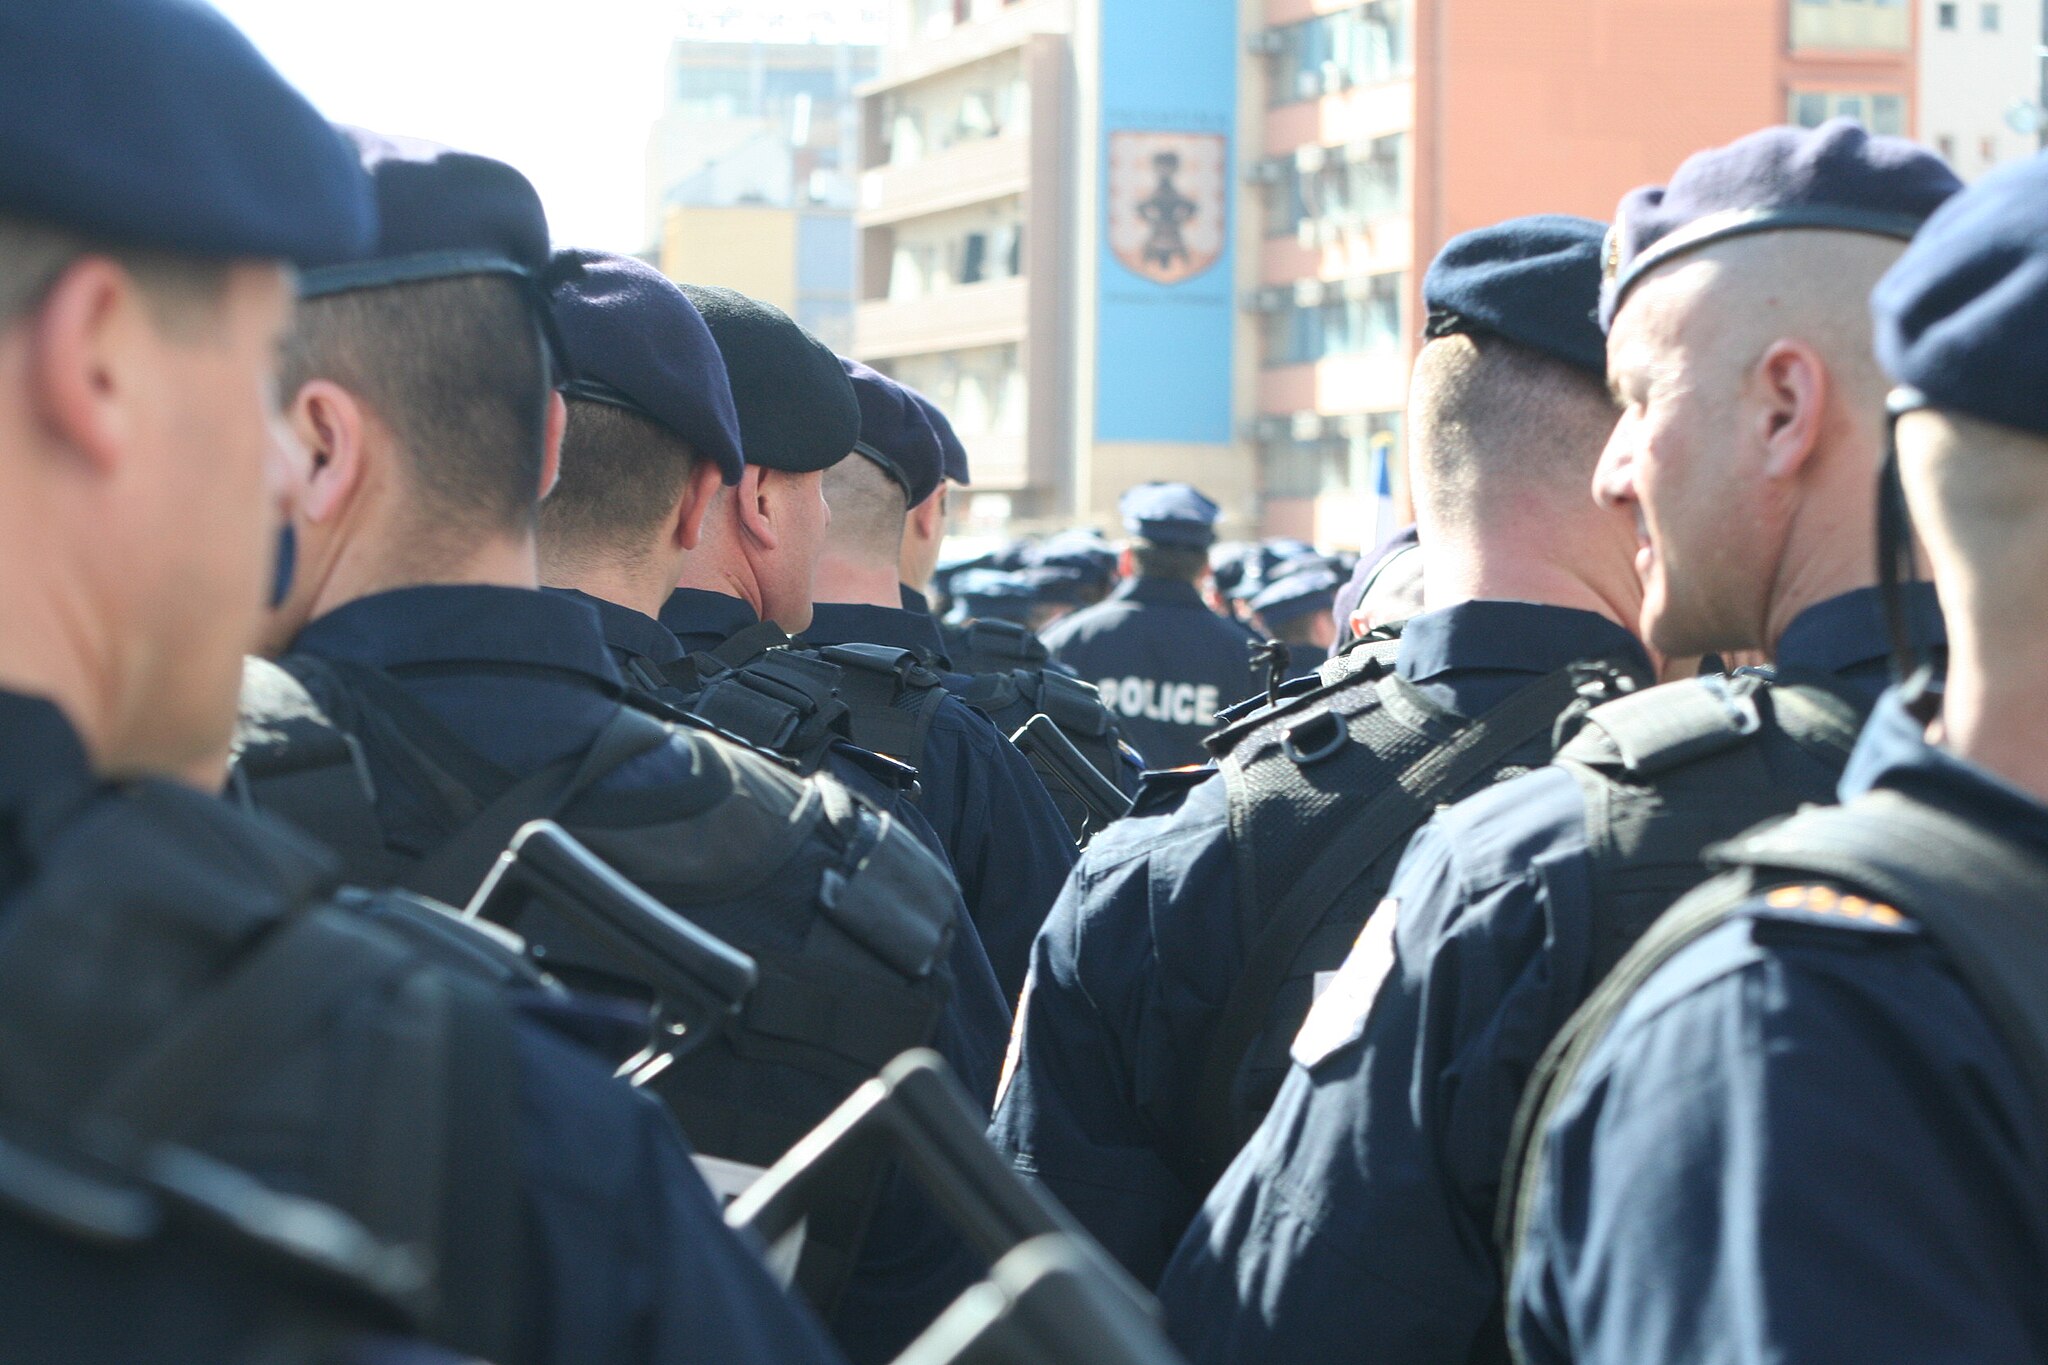 Bild: SUHEJLO, Kosovo Police Ready For Parade, CC BY-SA 3.0, via Wikimedia Commons, (keine Änderungen vorgenommen)